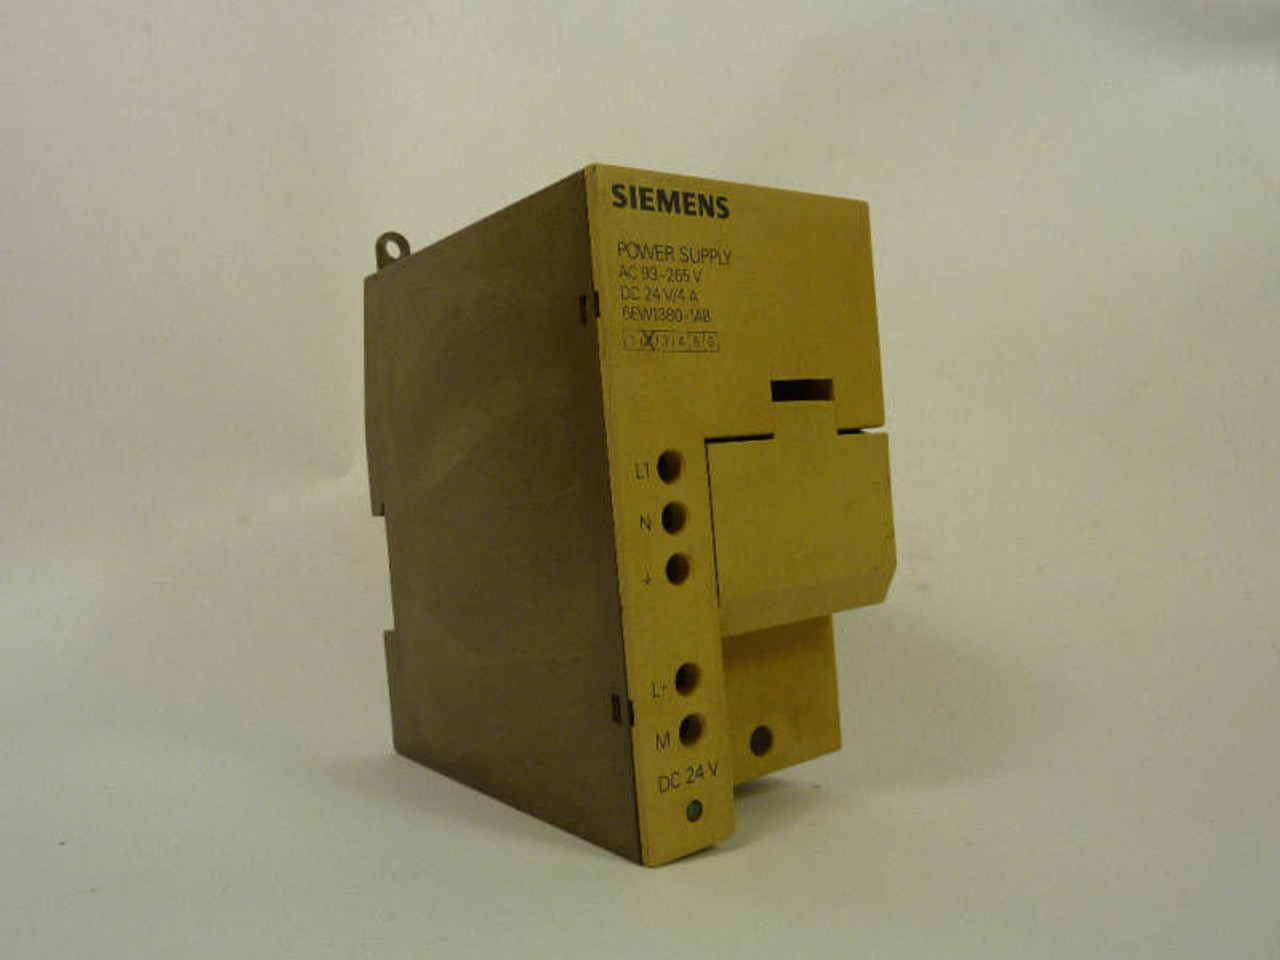 Siemens Power Supply 93-265VAC 24VDC 4A 6EW1380-1AB USED